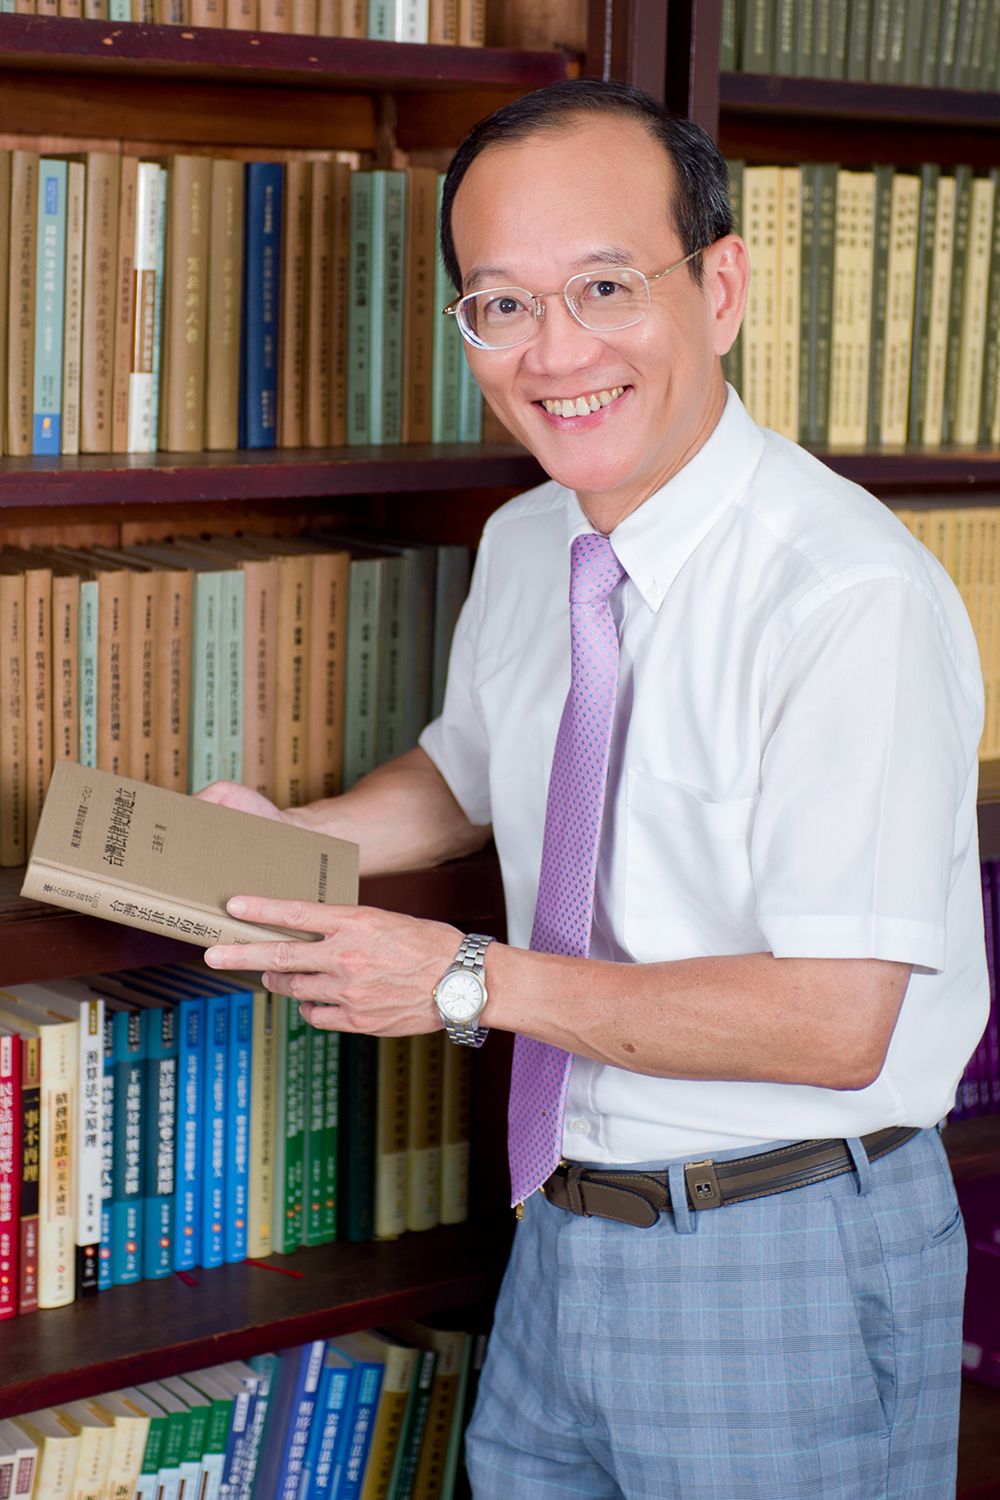 NTU Chair Professor Tay-sheng Wang holding his book